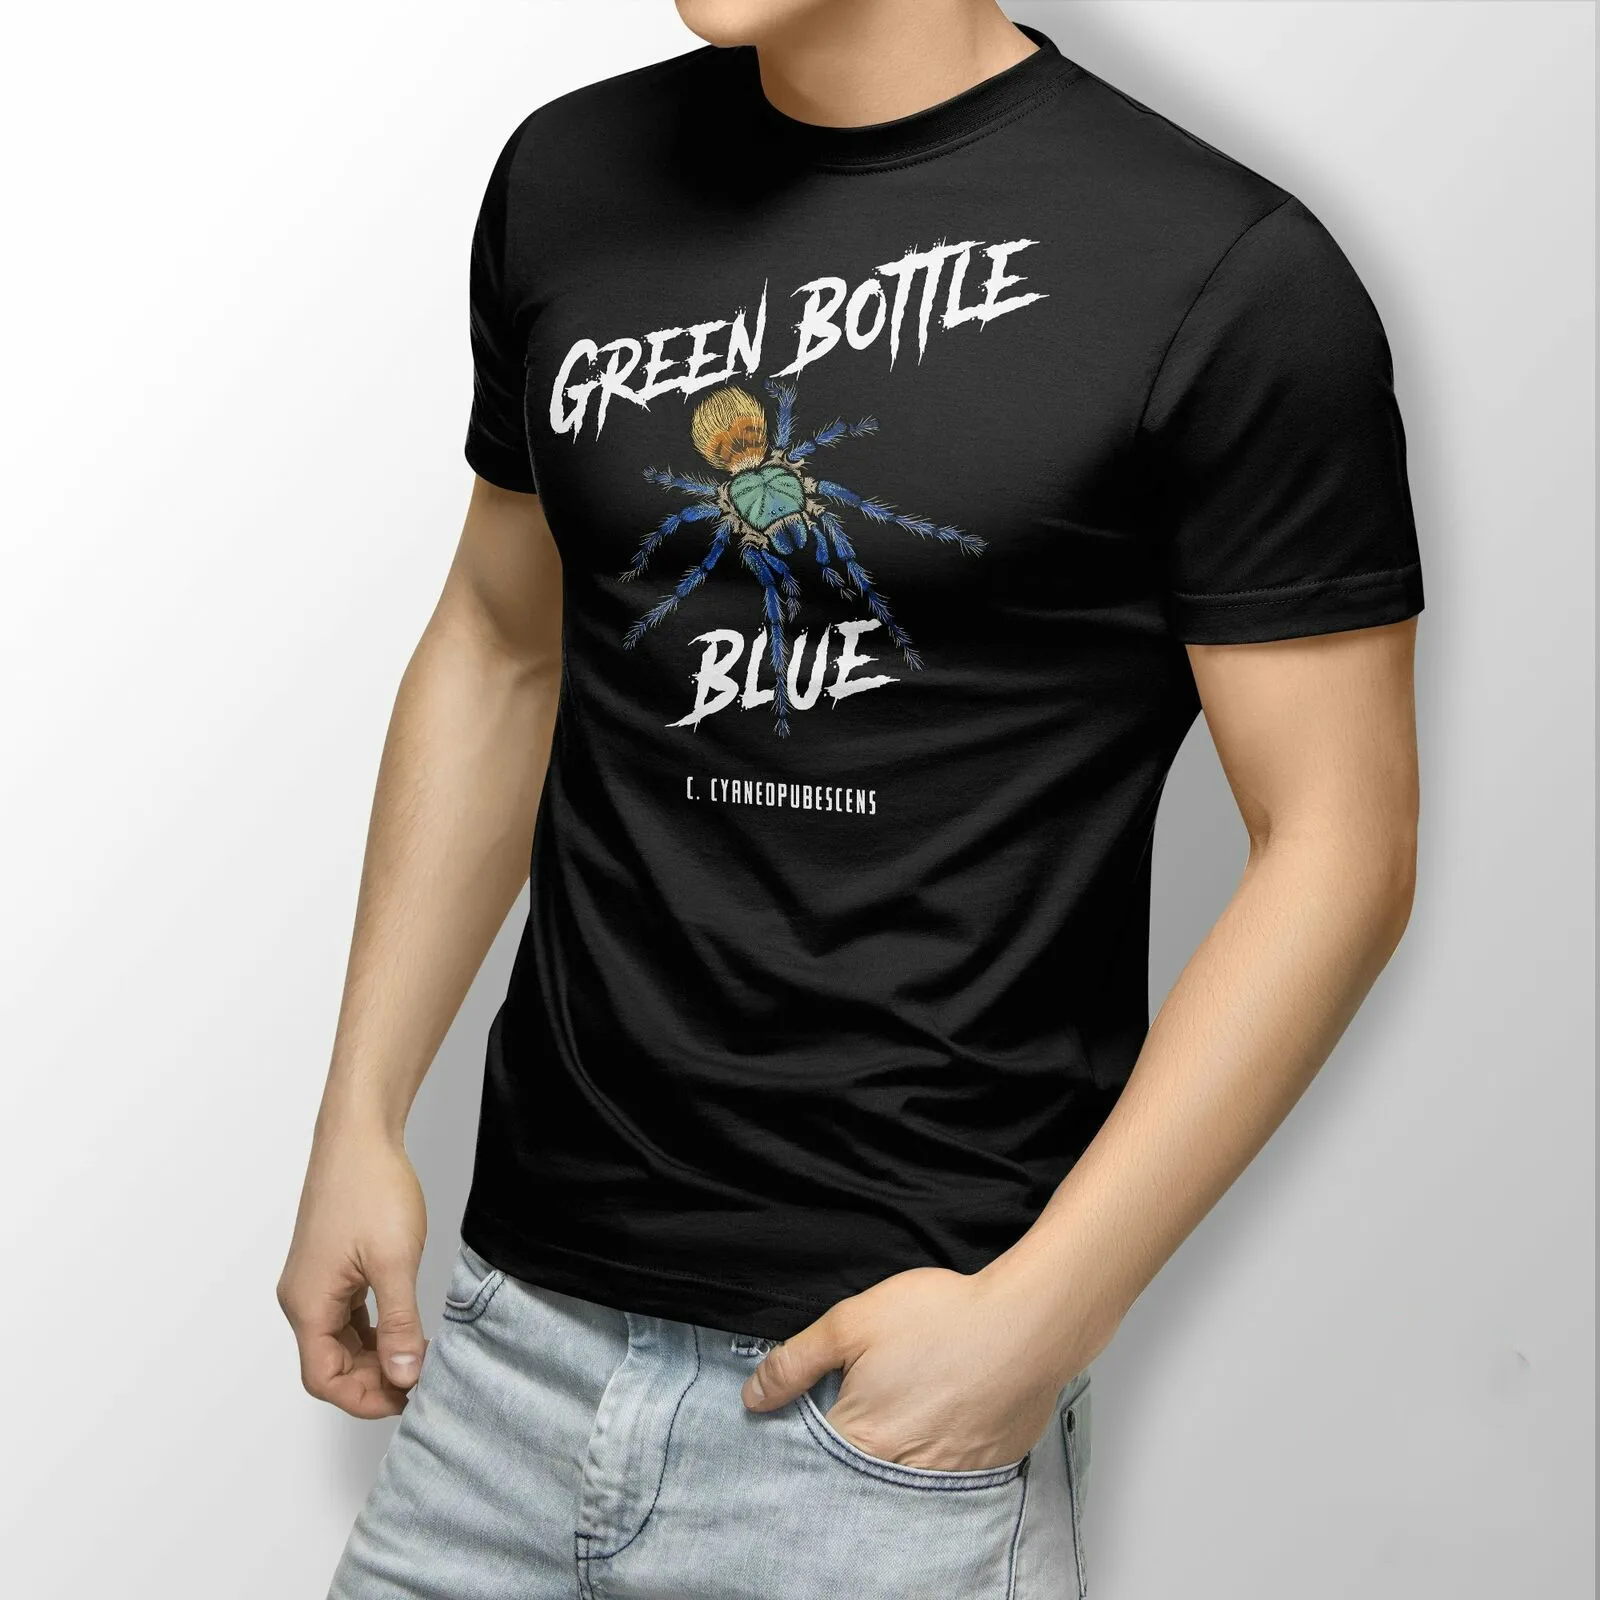 

Зеленая бутылочка синий Тарантул забавная футболка с насекомым пауком Повседневные футболки свободного кроя из 100% хлопка с коротким рукав...